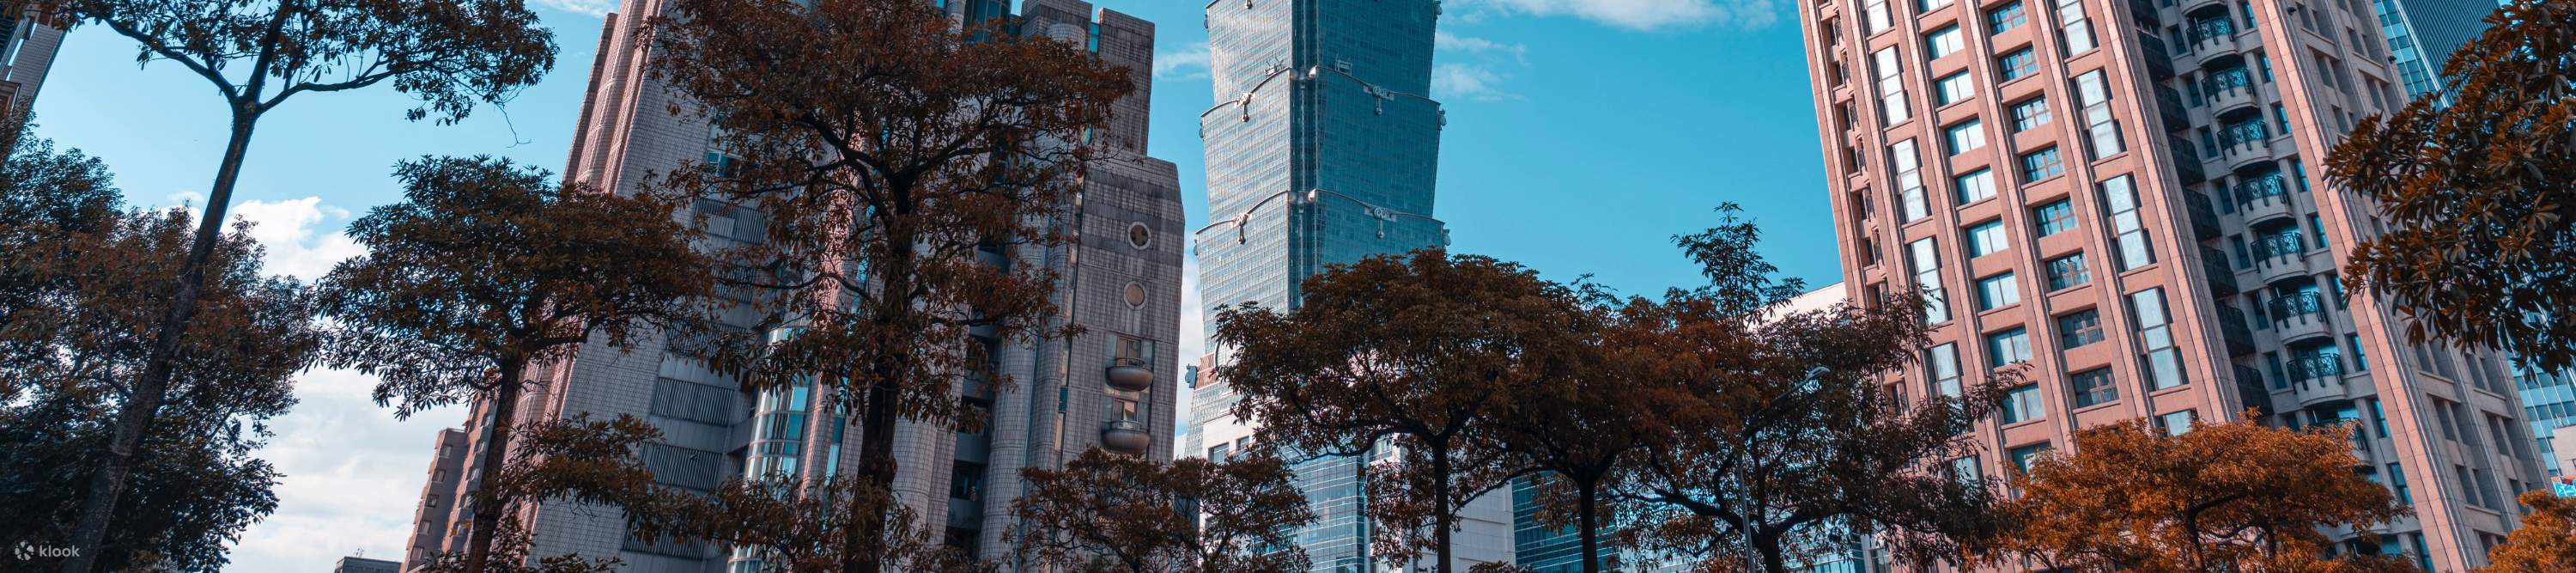 Taipei 101 and sky